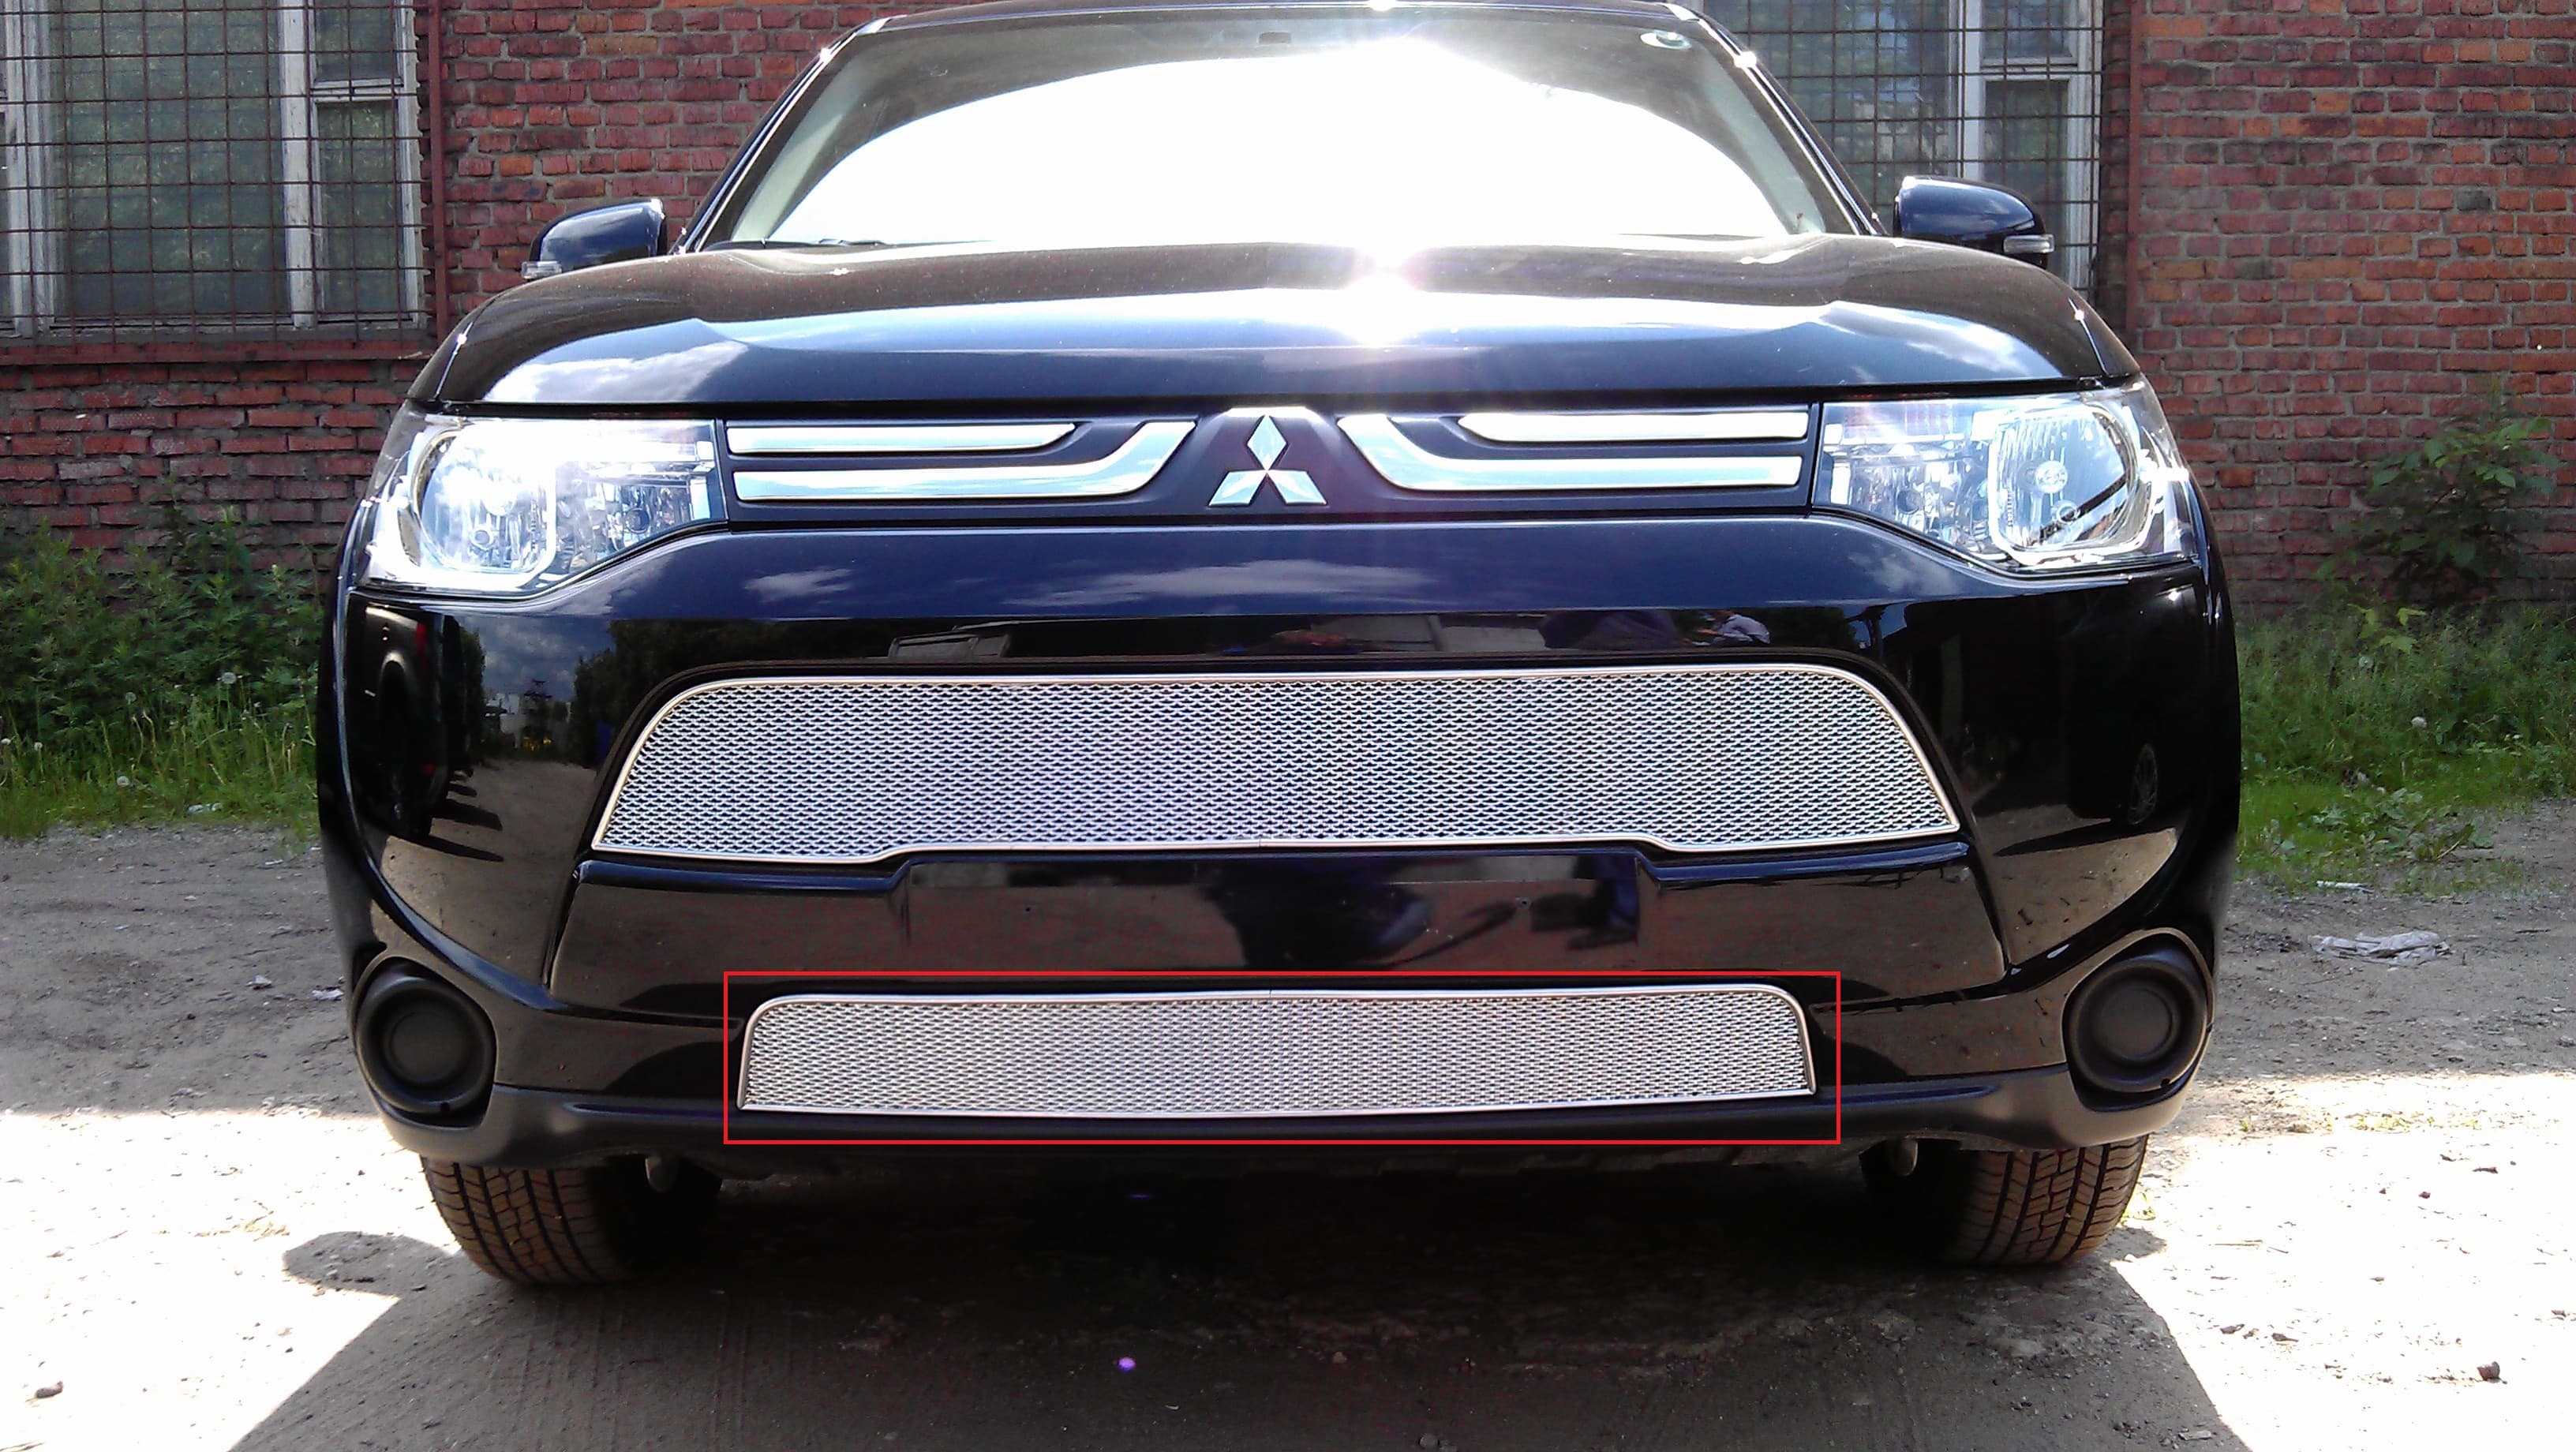 Защитная сетка радиатора ProtectGrille Premium нижняя для Mitsubishi Outlander III (2012-2014 Хром)